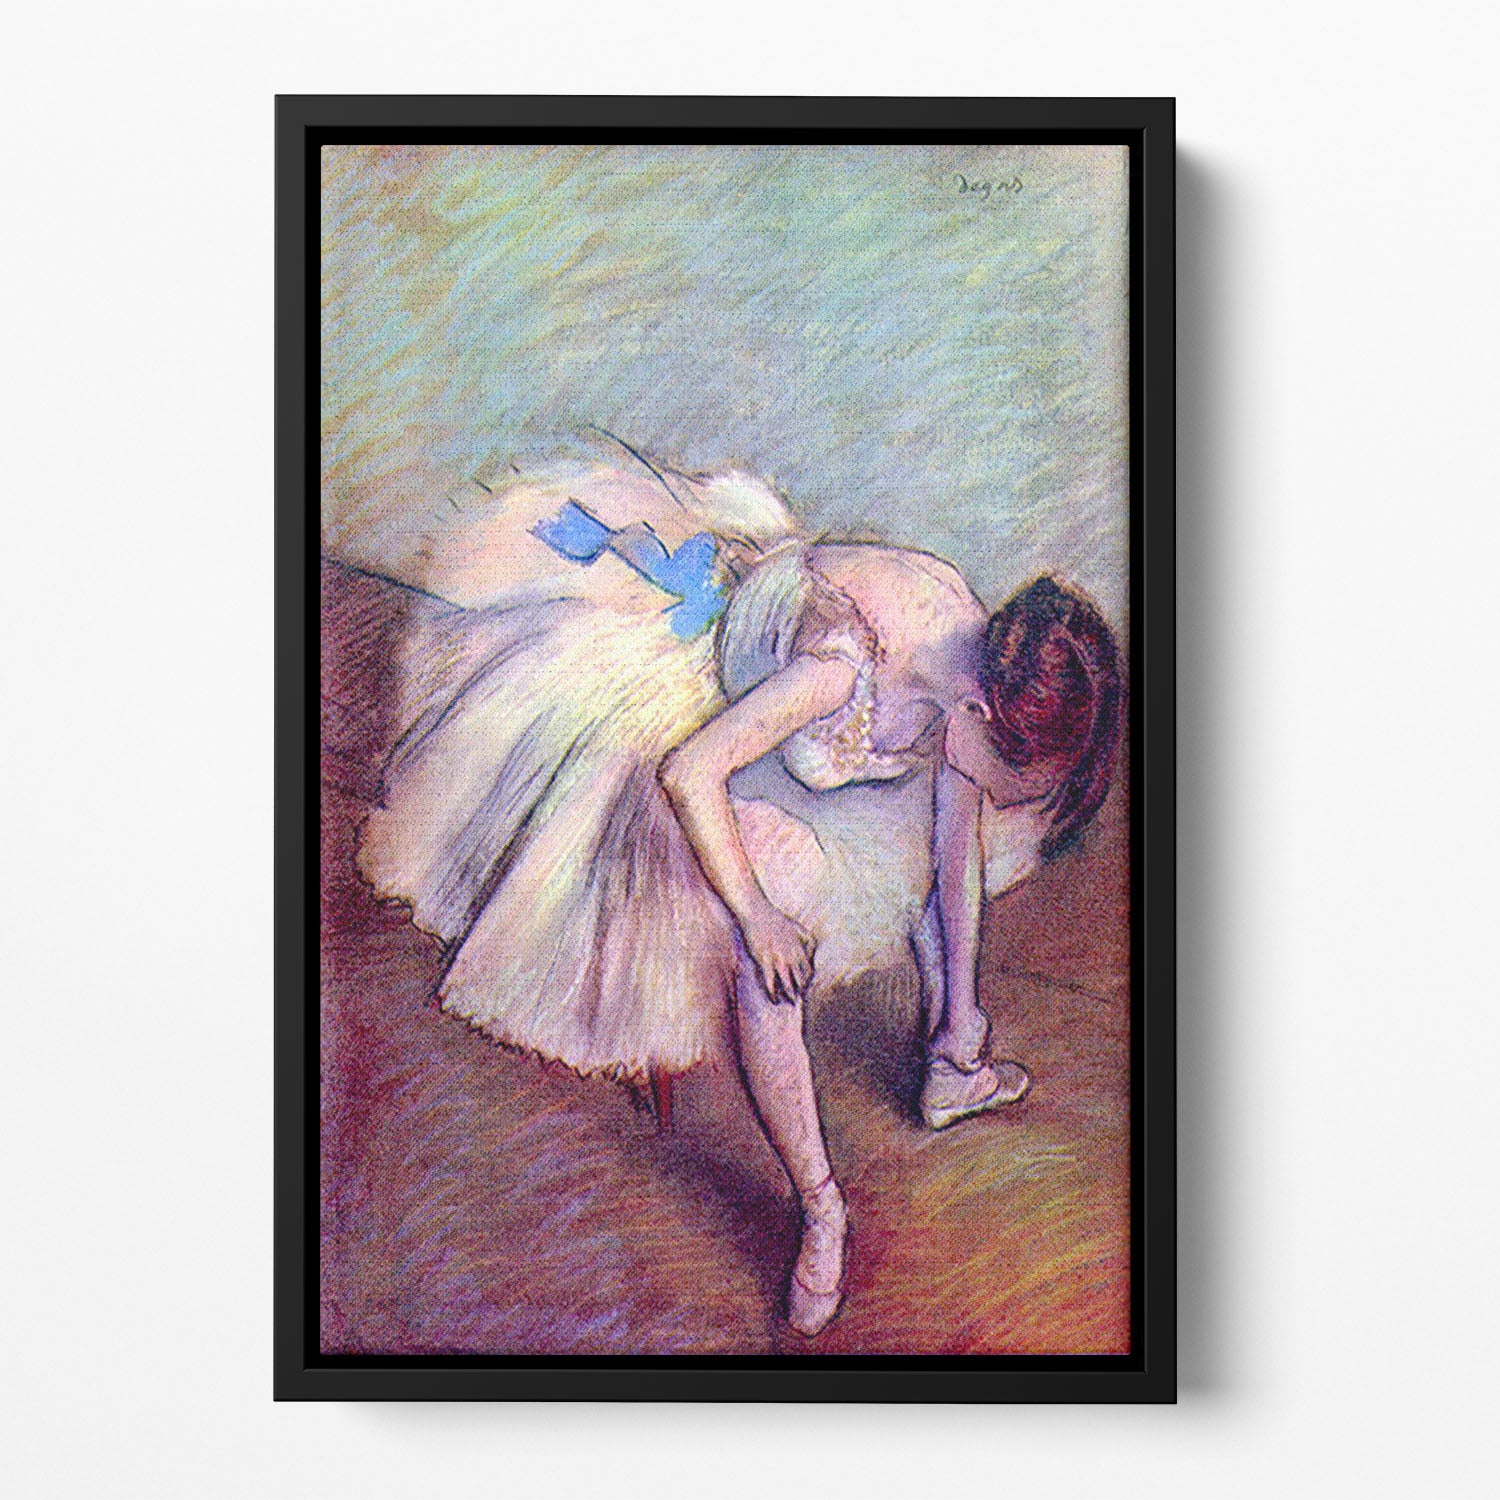 Dancer 2 by Degas Floating Framed Canvas